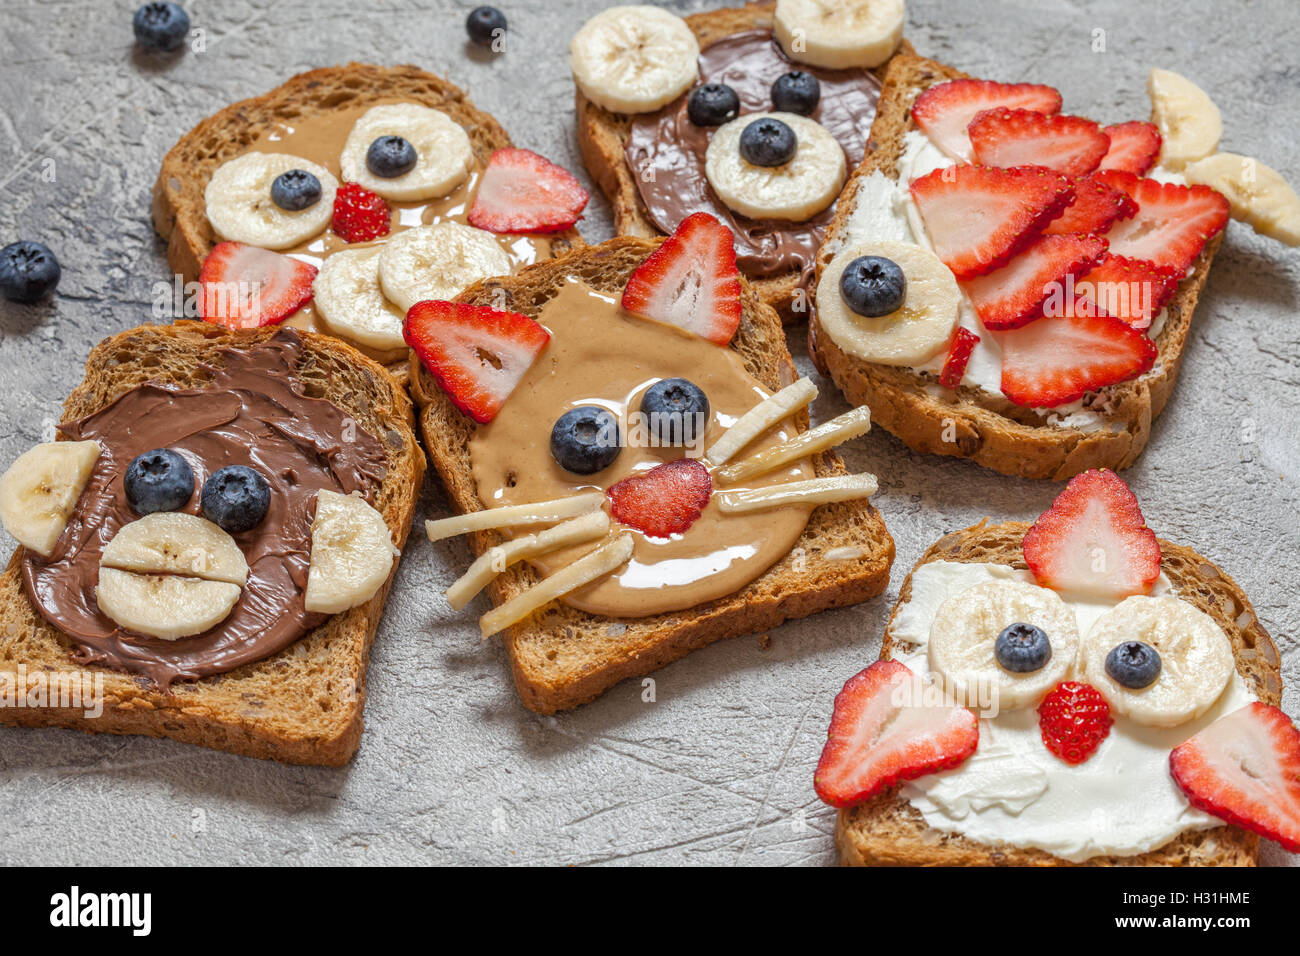 Lustige Tier Gesichter Toast mit Spreads, Banane, Erdbeere und Heidelbeere Stockfoto